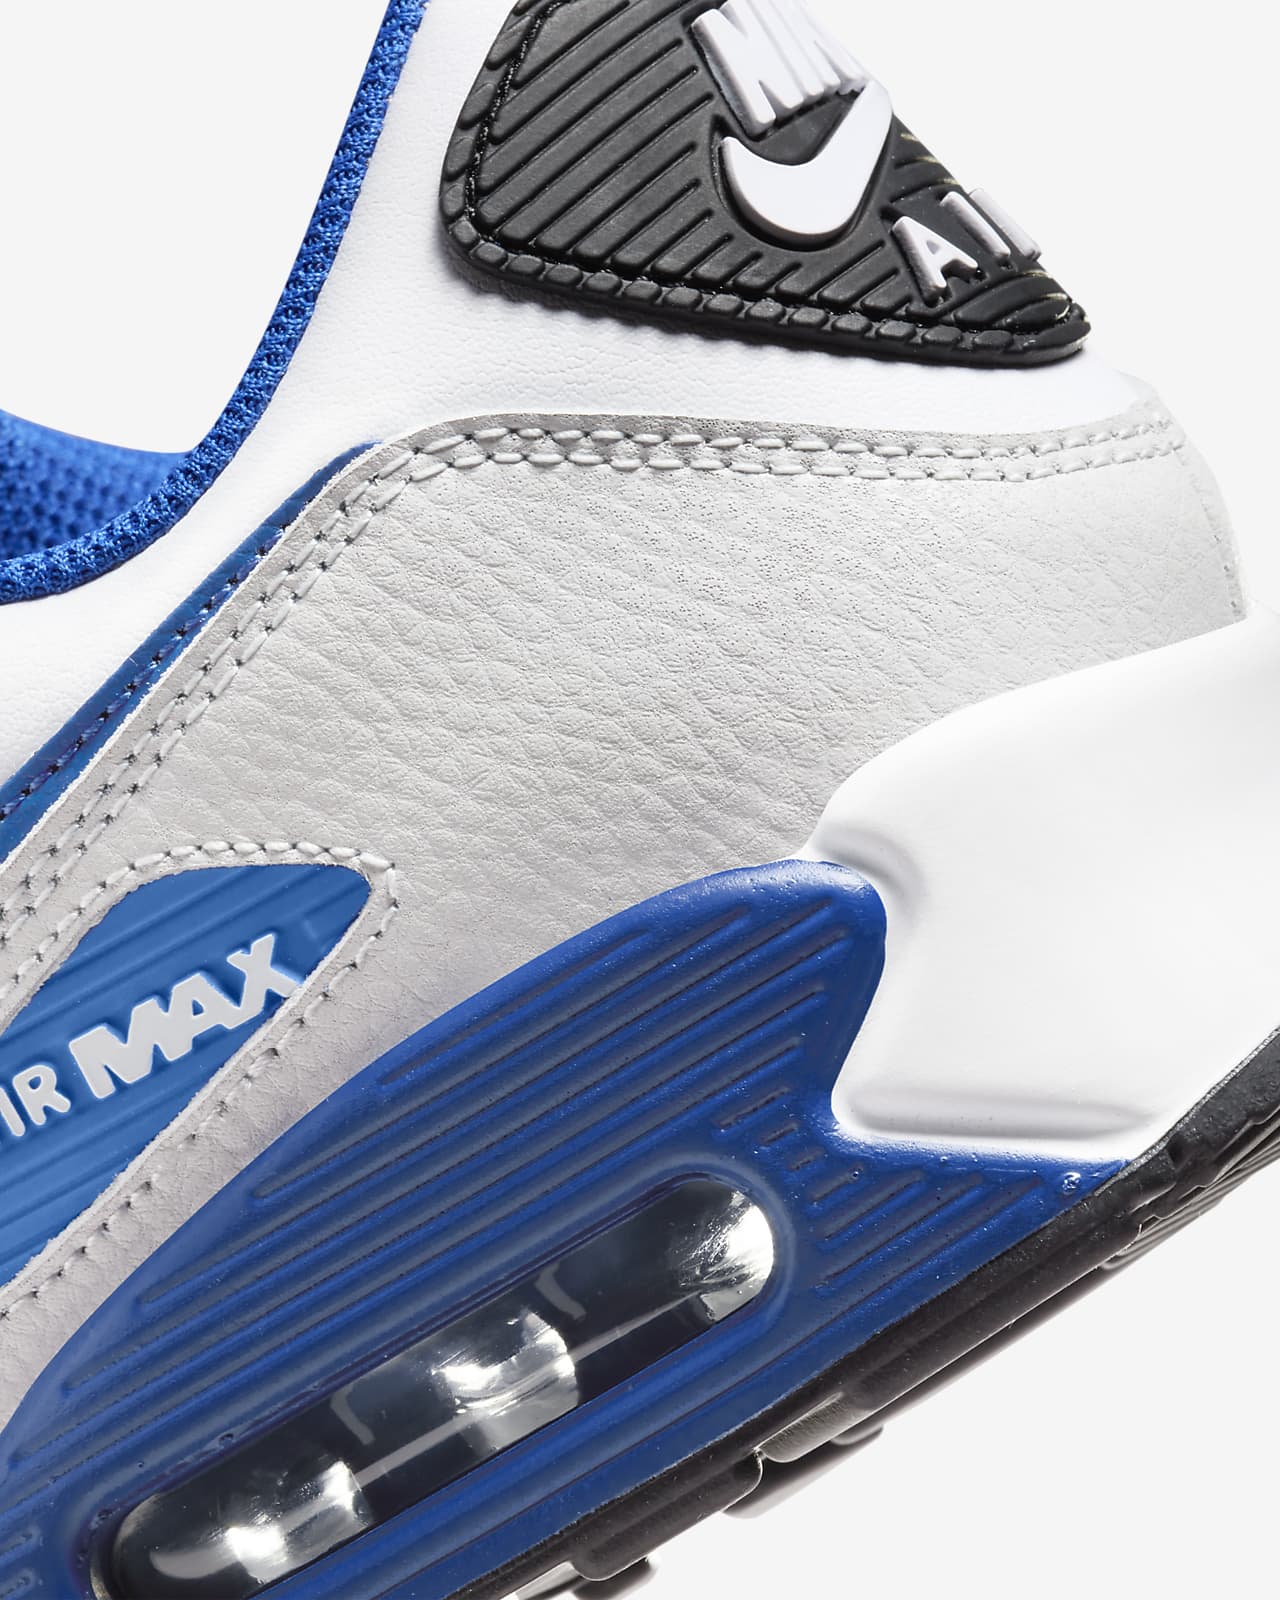 Blue Air Max 90 Shoes.